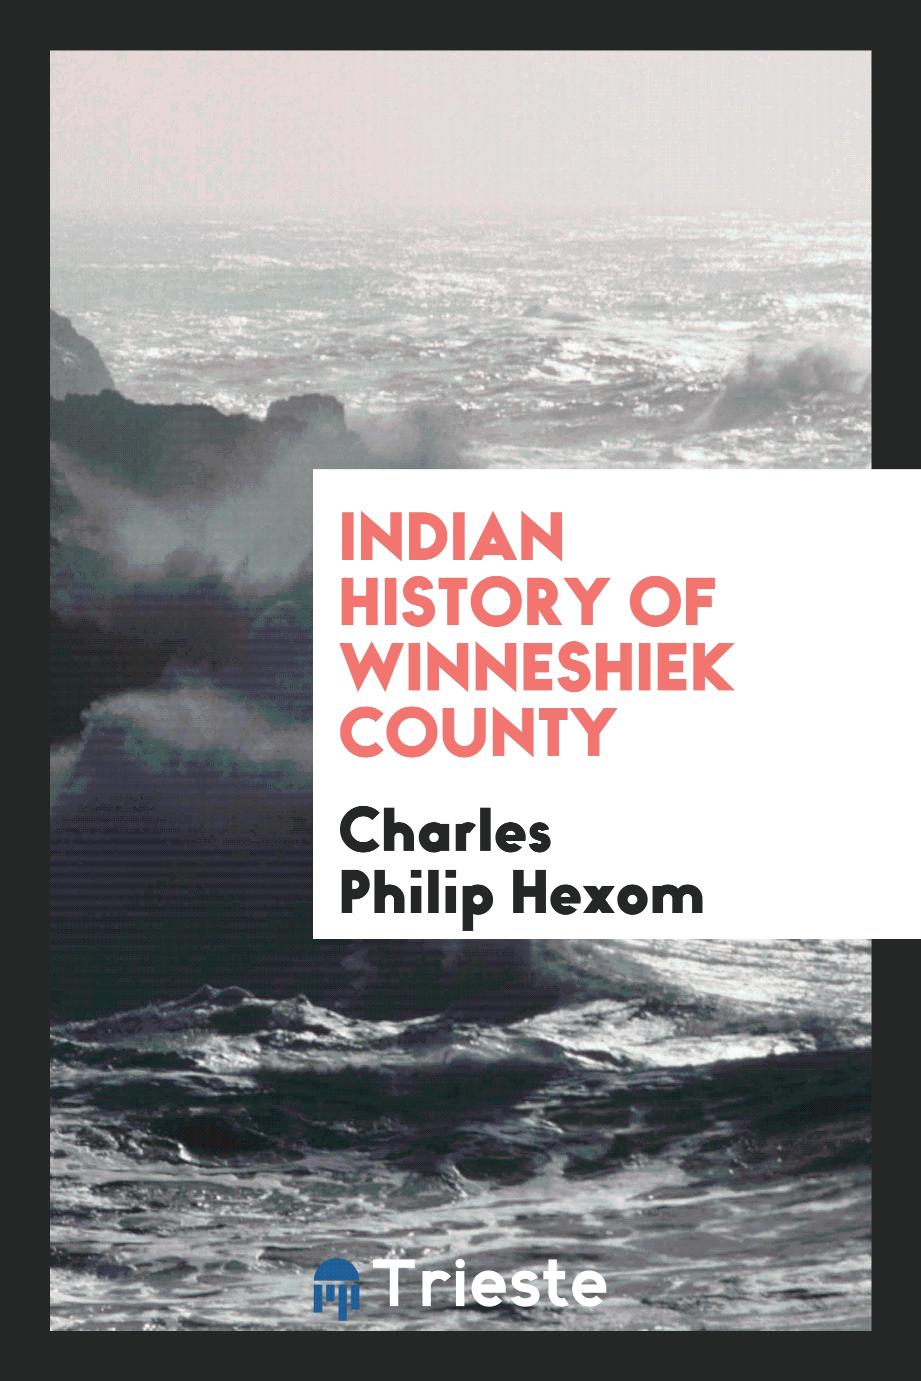 Indian History of Winneshiek County